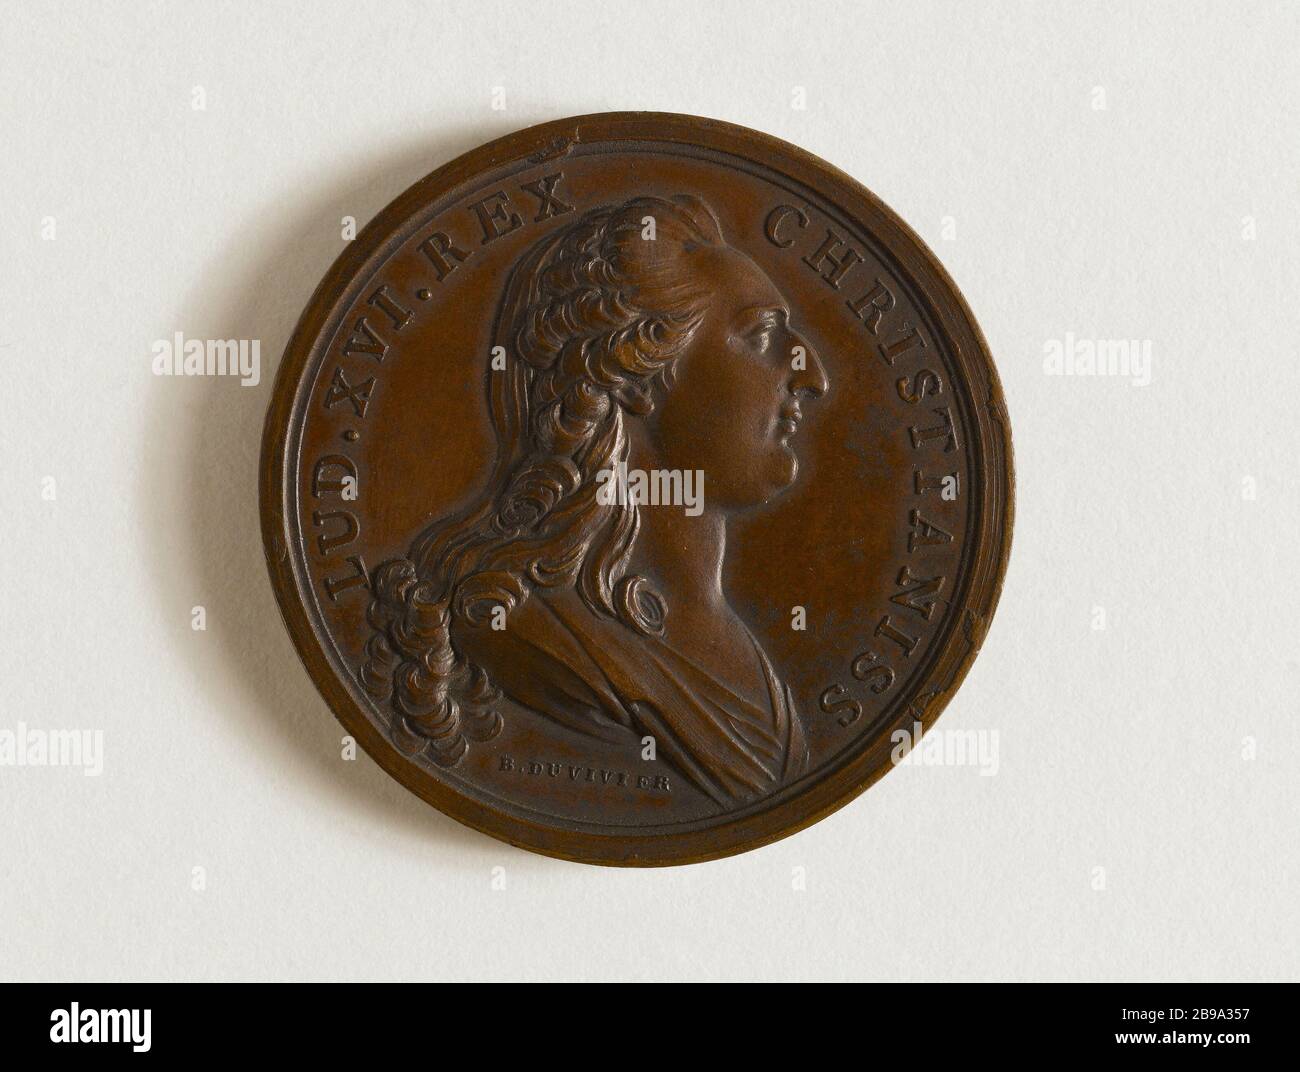 LOUIS XVI / MEDAL OF RESCUE, January 29, 1787 Benjamin Duvivier (1730-1819). 'Louis XVI / médaille de sauvetage, 29 janvier 1787'. Médaille, 1787. Paris, musée Carnavalet. Stock Photo